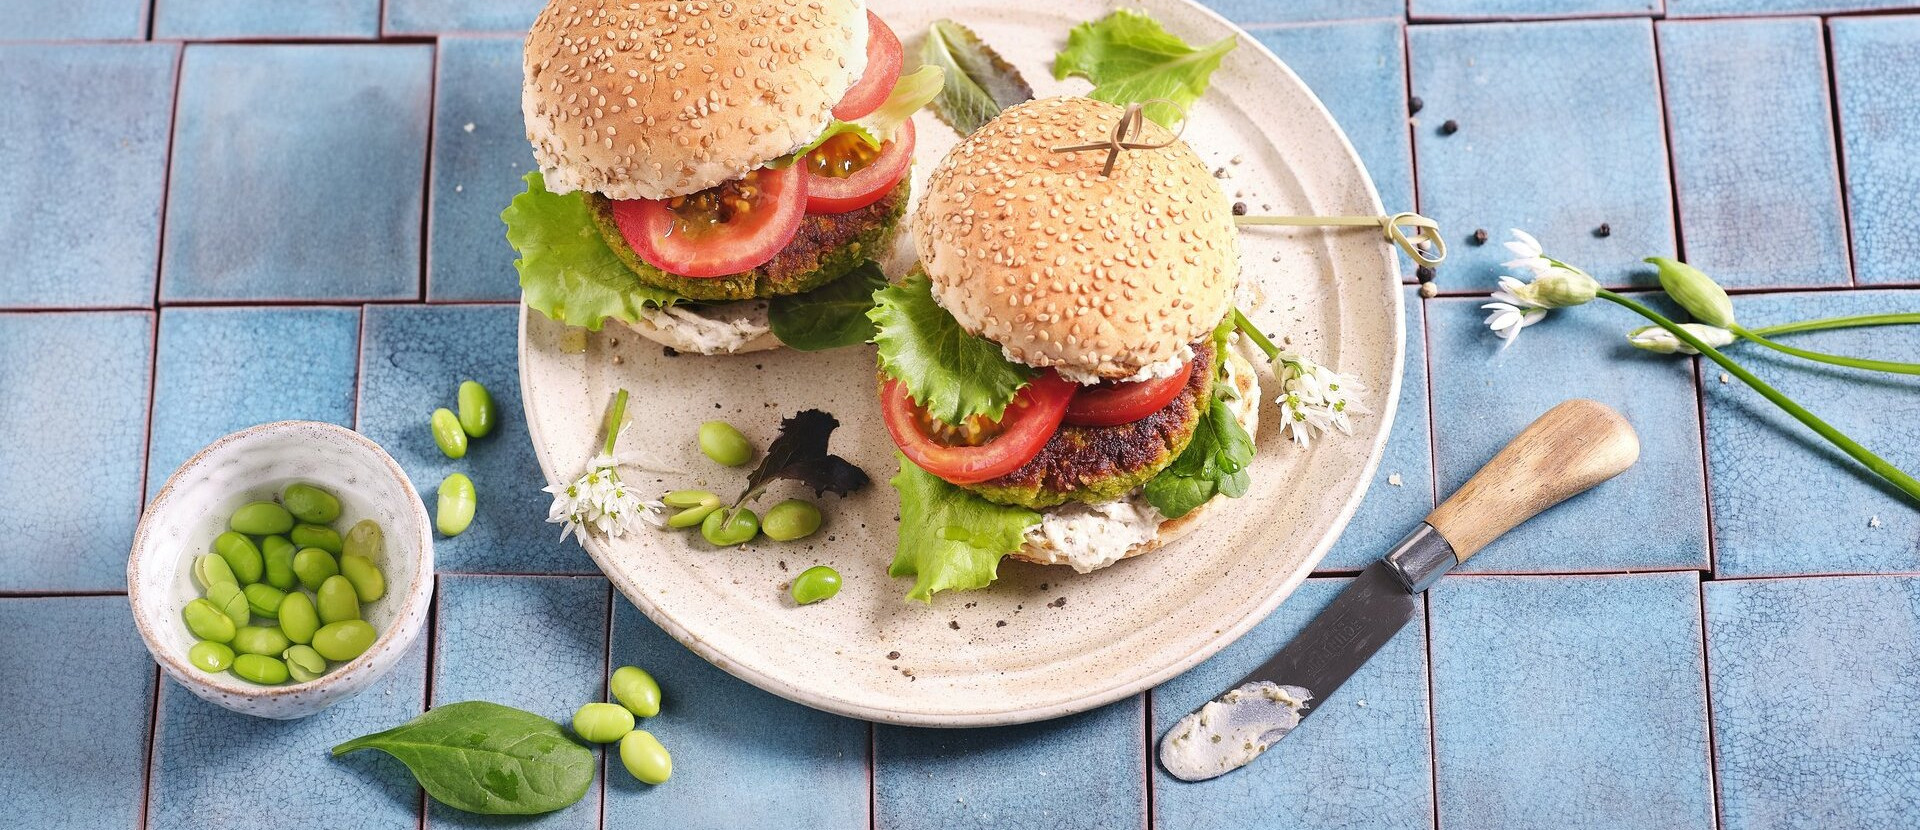 Das Bild zeigt zwei leckere vegane Burger mit Protein Patty, grünen Salatblättern und Tomatenscheiben.